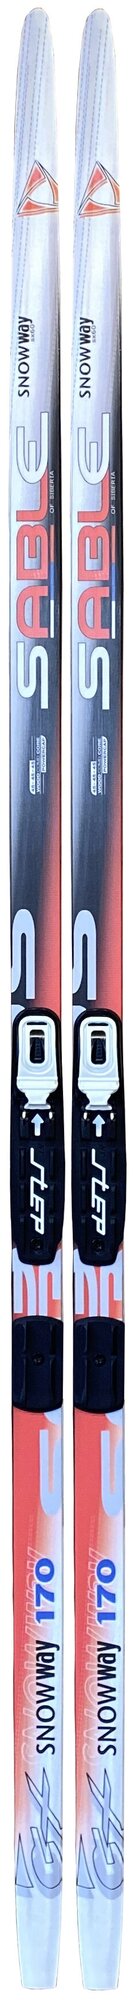 Лыжный комплект STC Snowway 170см STEP NNN (лыжи + крепления)